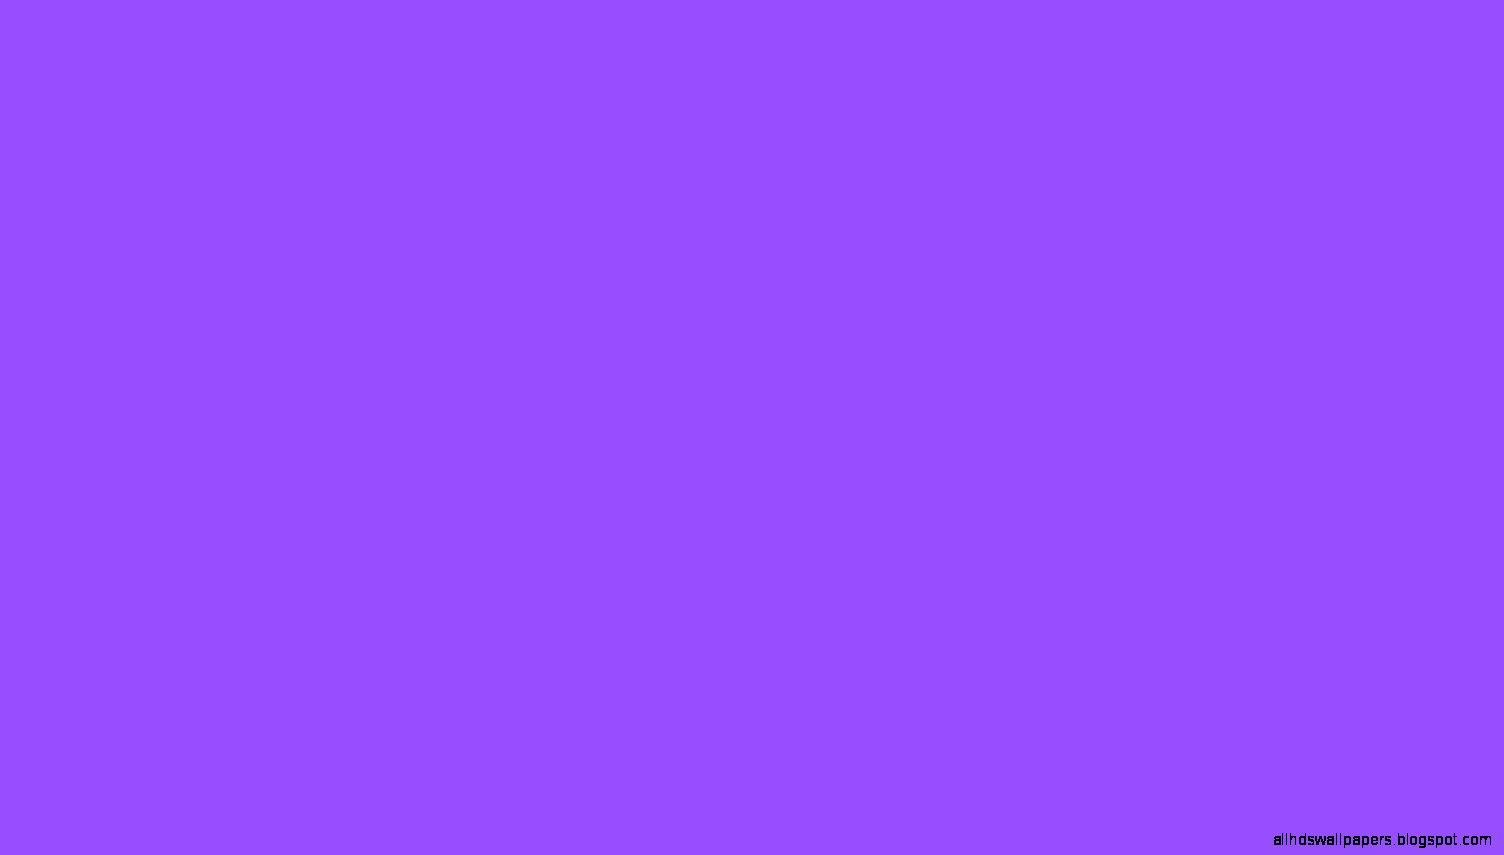 無地の紫色の壁紙,青い,バイオレット,紫の,ライラック,ピンク